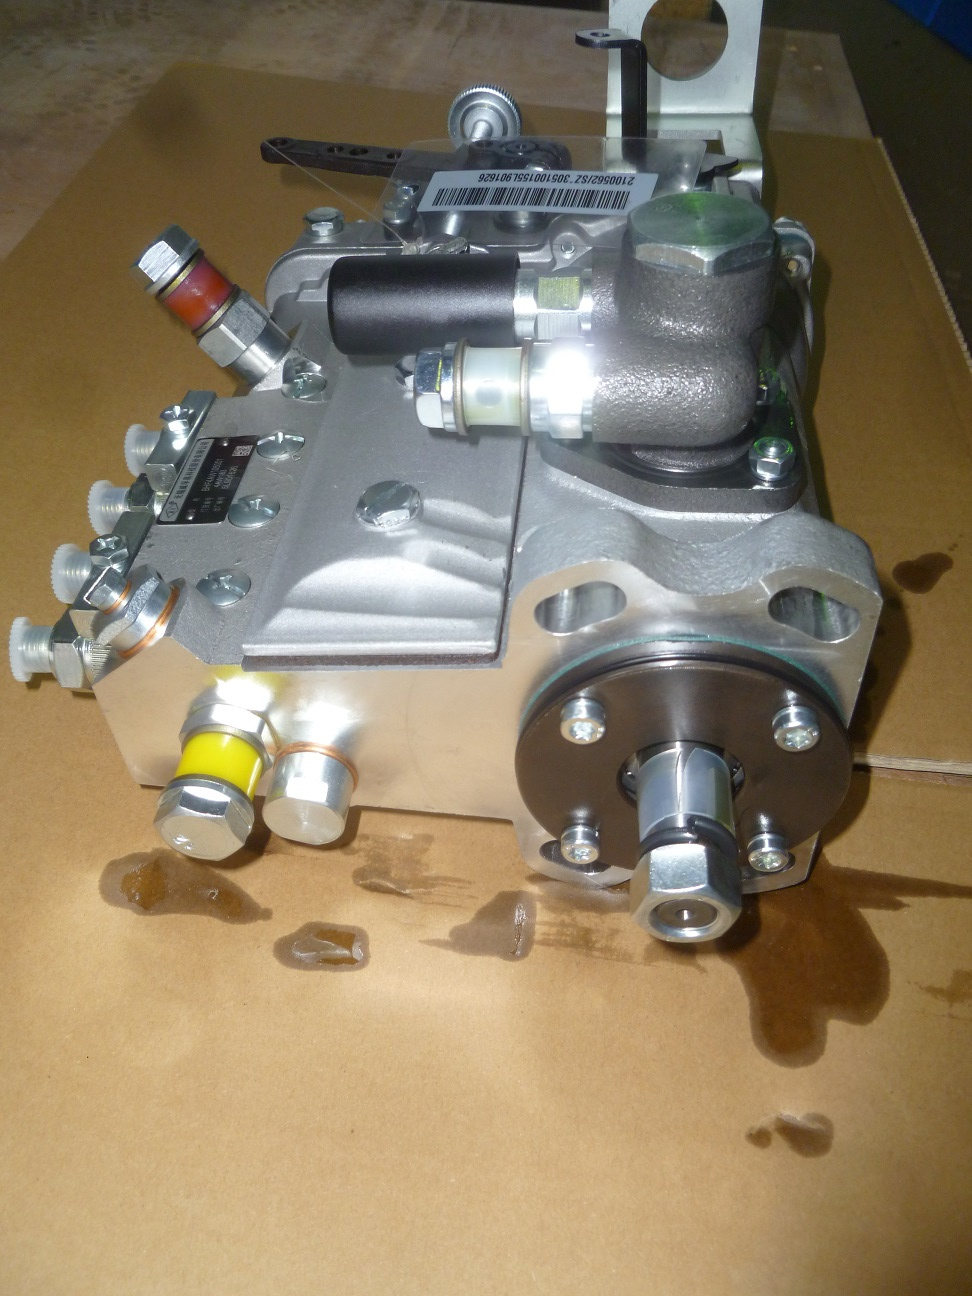 Насос топливный высокого давления Weichai WP4.6D44E2 /Injection pump Assy (2100562) (BHF4AW1050101)